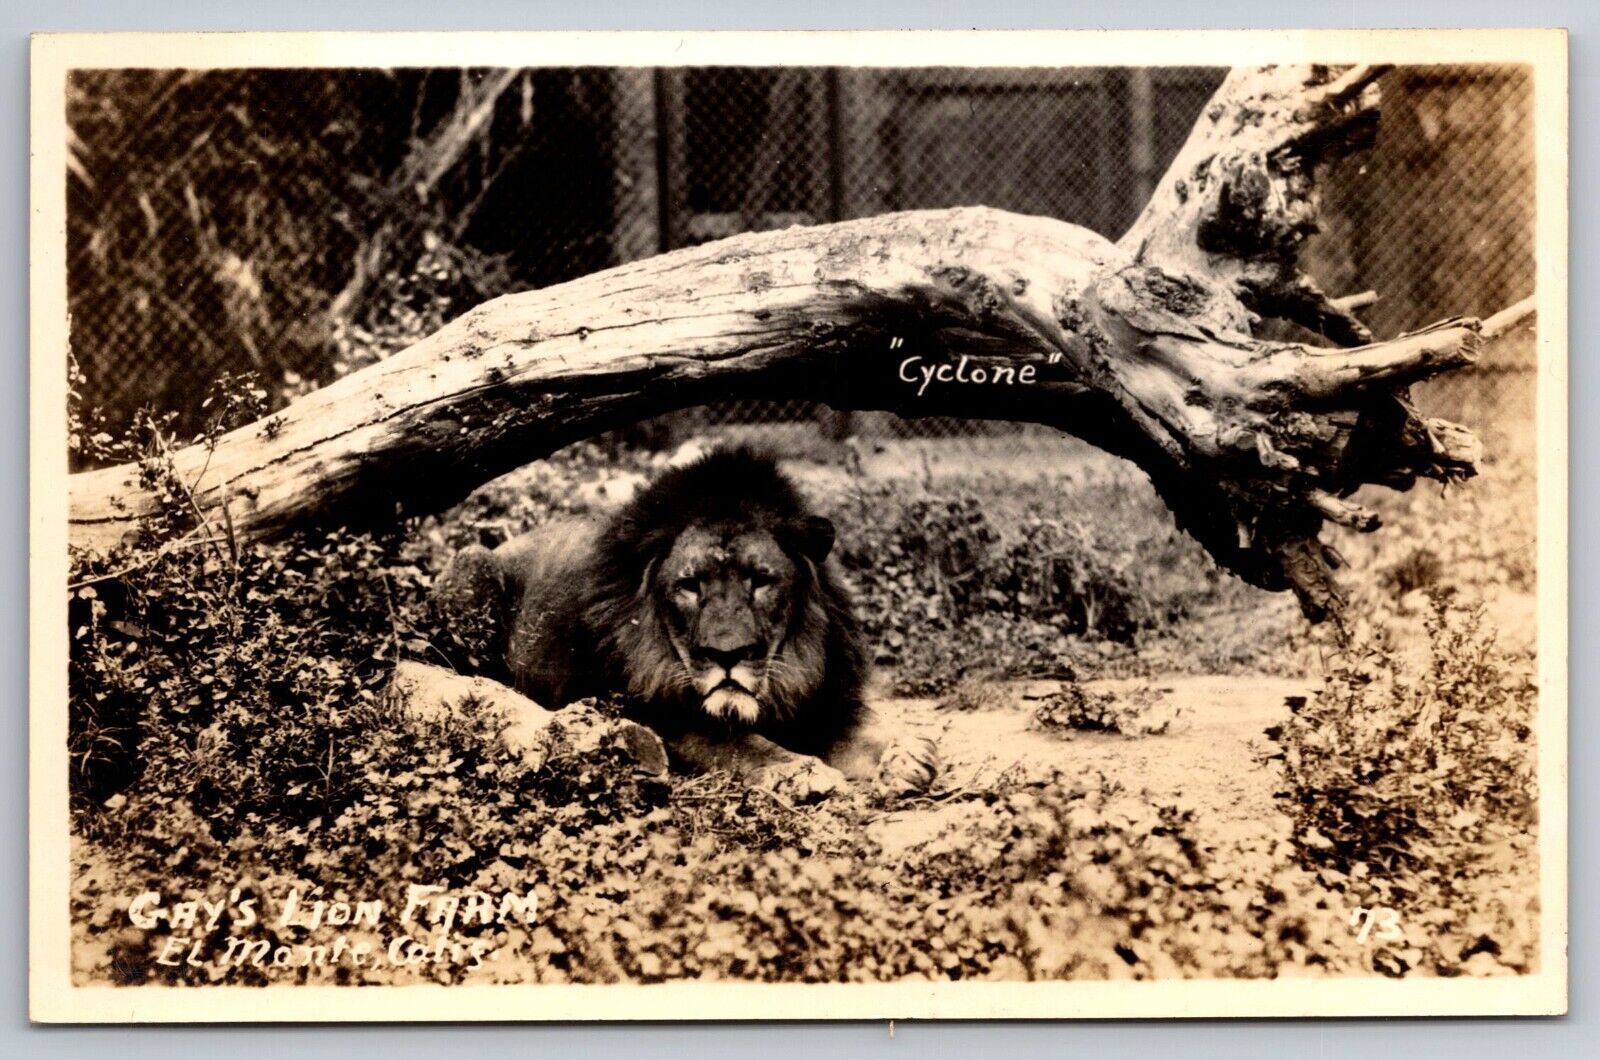 Cyclone. Gay's Lion Farm. El Monte California Real Photo Postcard RPPC